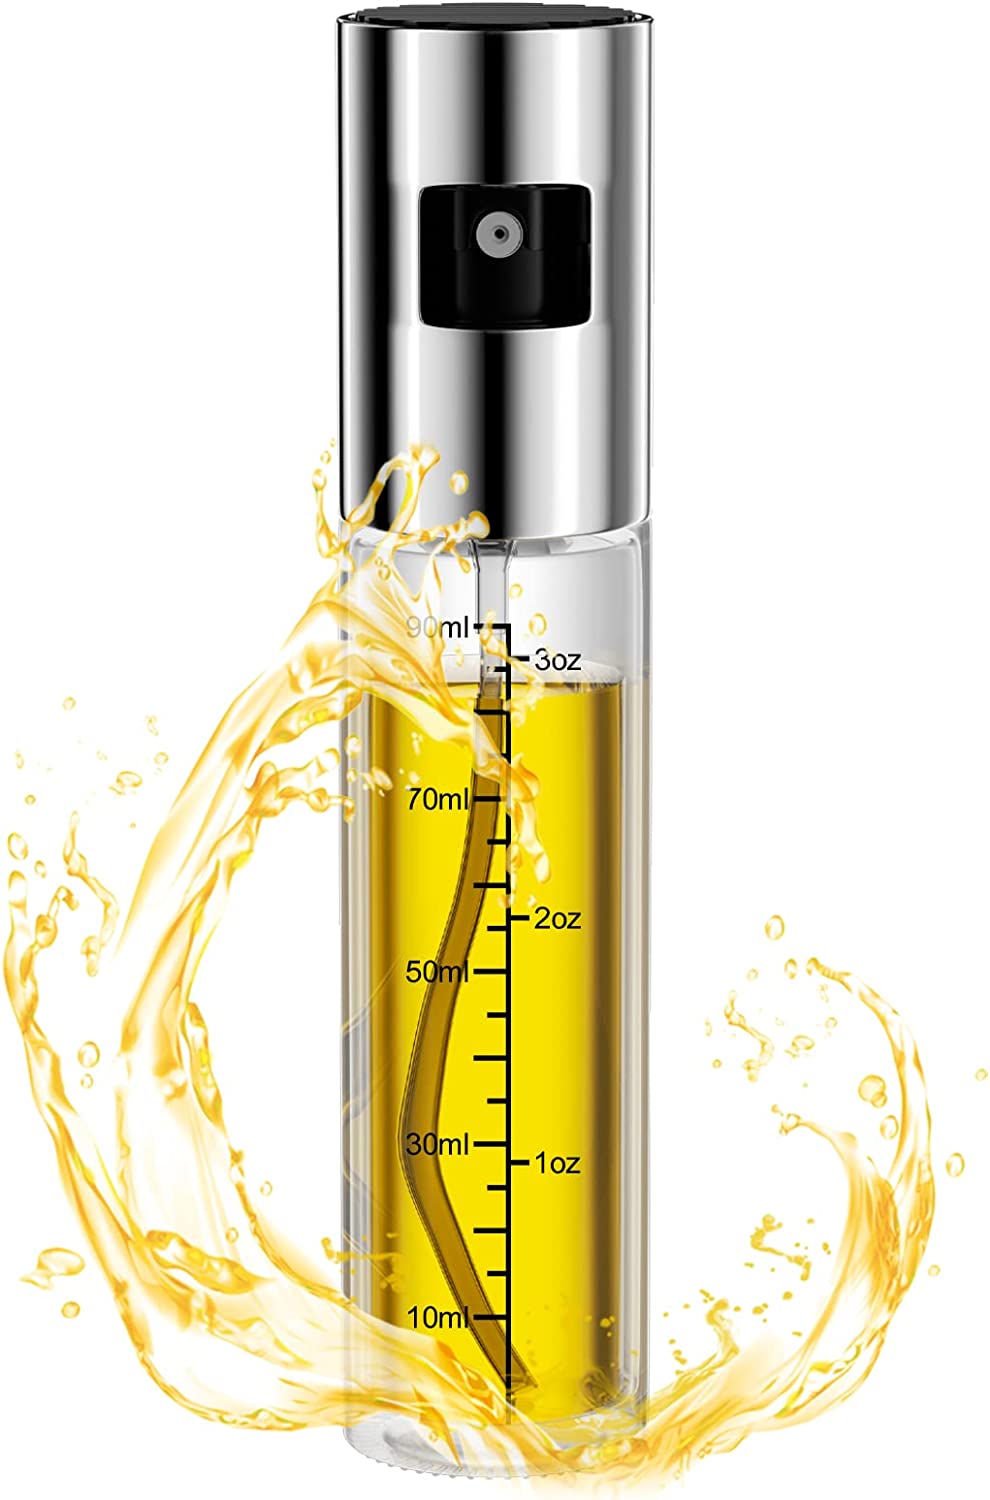 Los 9 mejores sprays de aceite de cocina